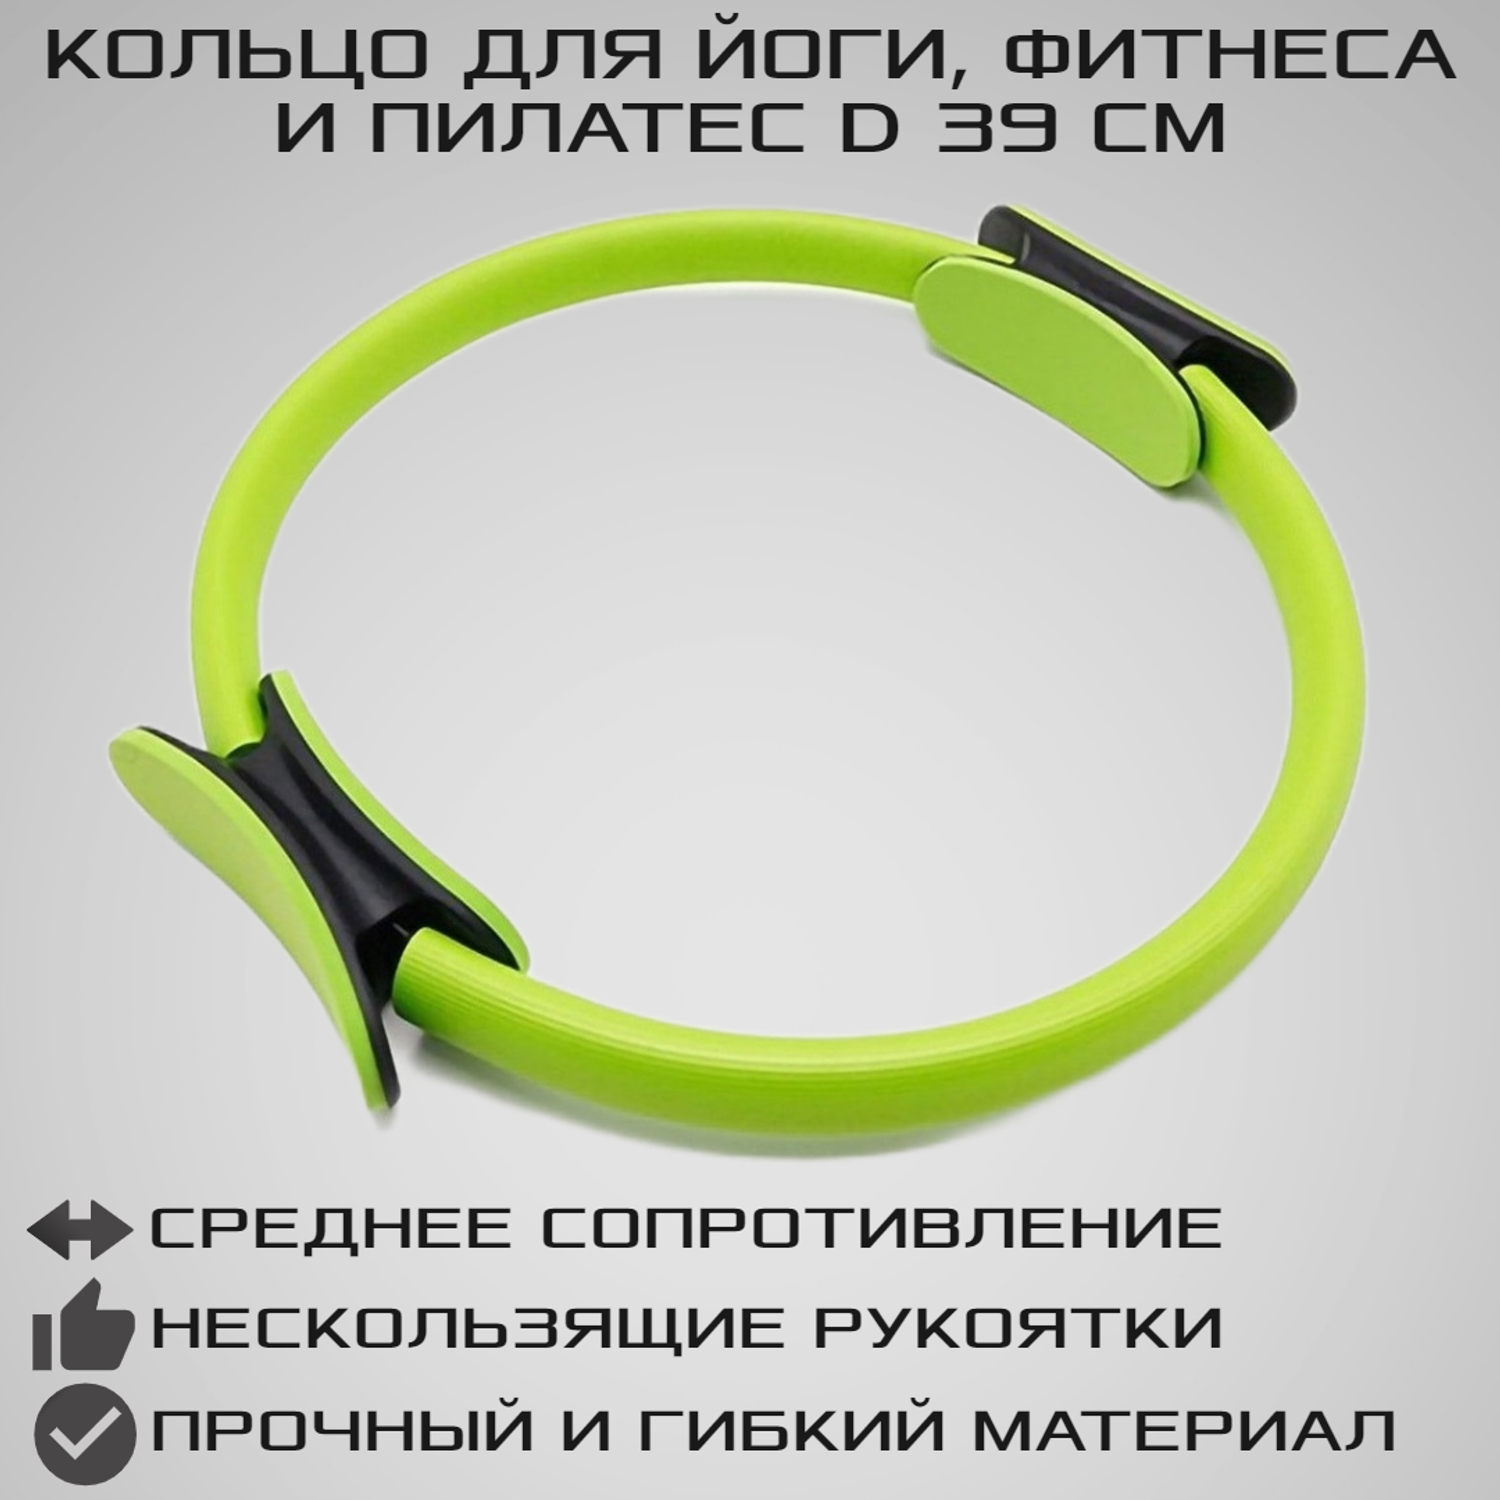 Изотоническое кольцо STRONG BODY обруч для йоги и пилатес d 38 см салатовое - фото 1